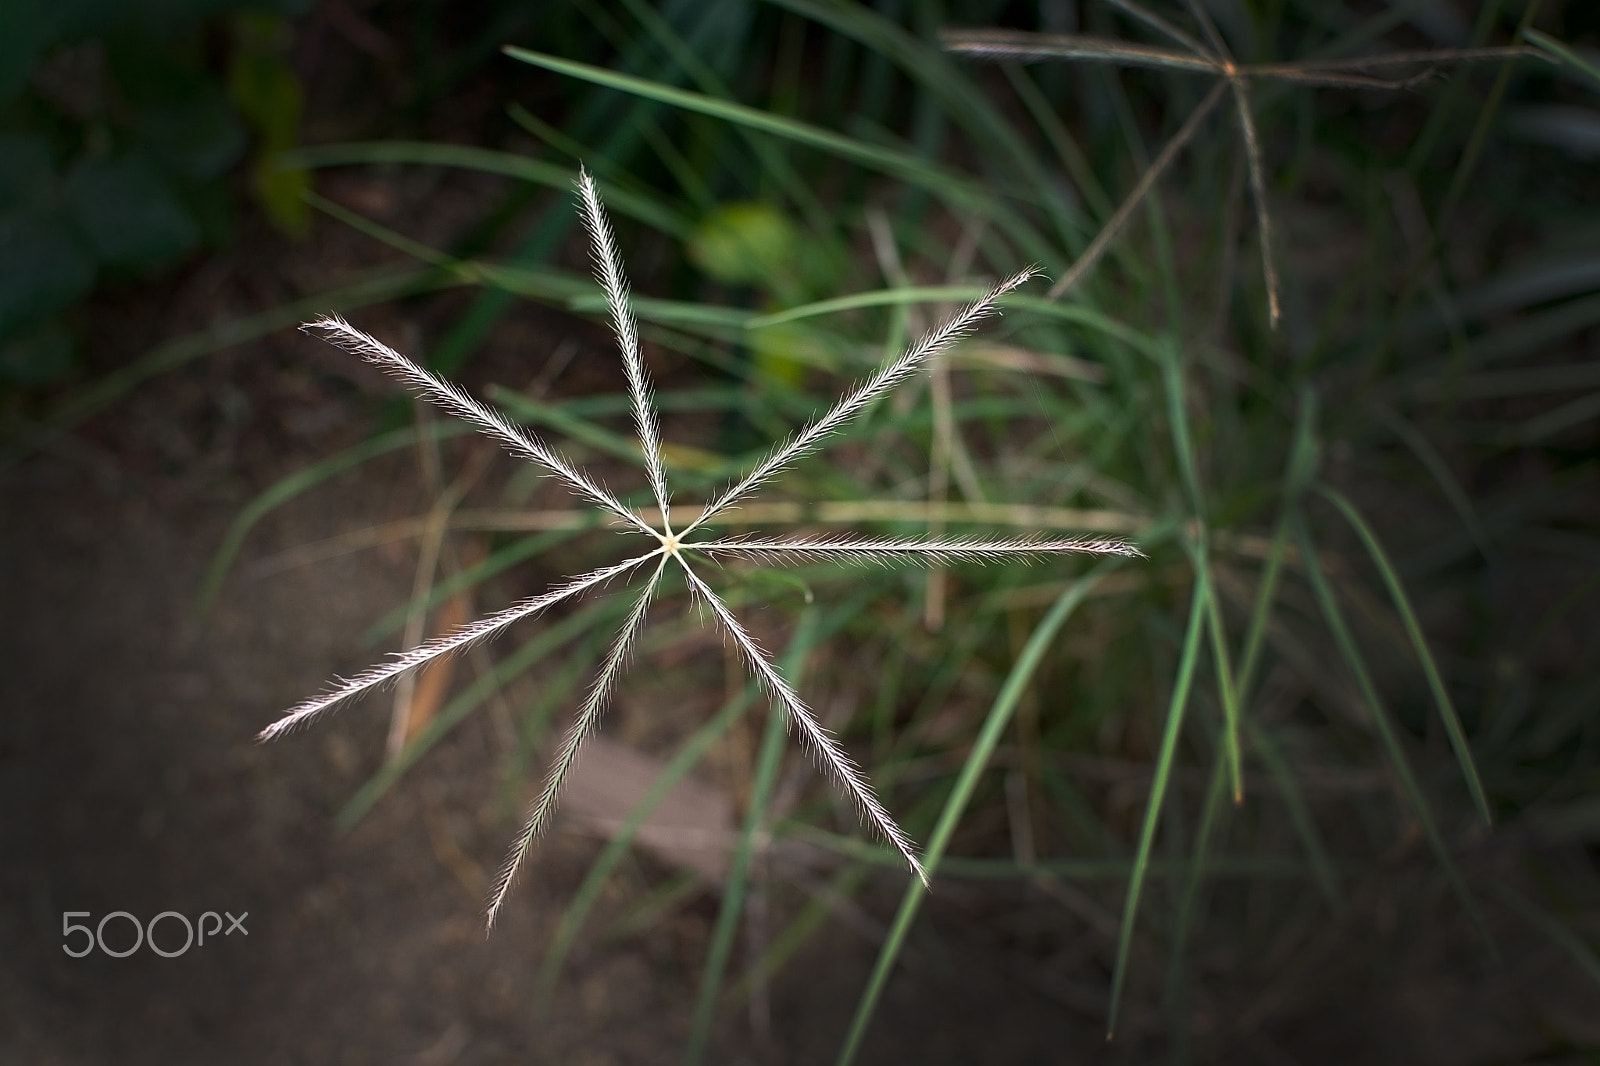 Nikon D7100 + AF Nikkor 28mm f/2.8 sample photo. Star shaped grassy herb photography